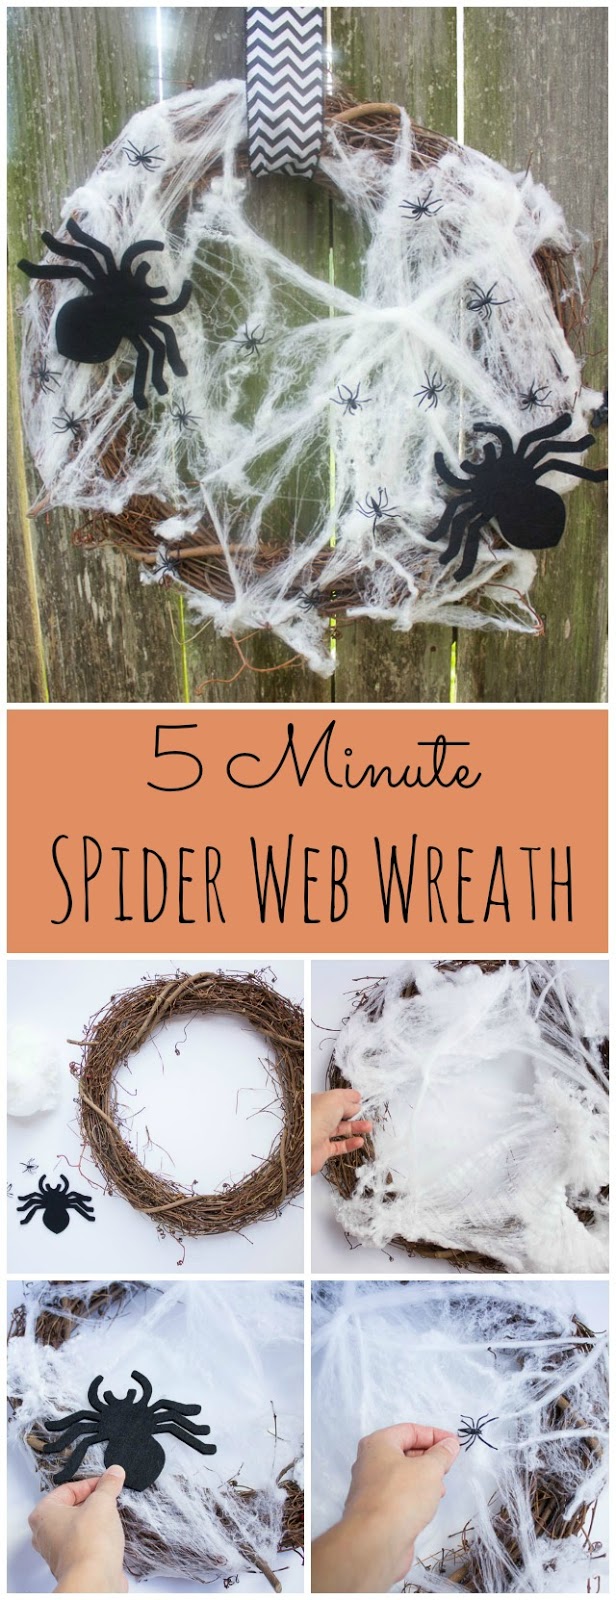 spider web wreath (via designimprovised)